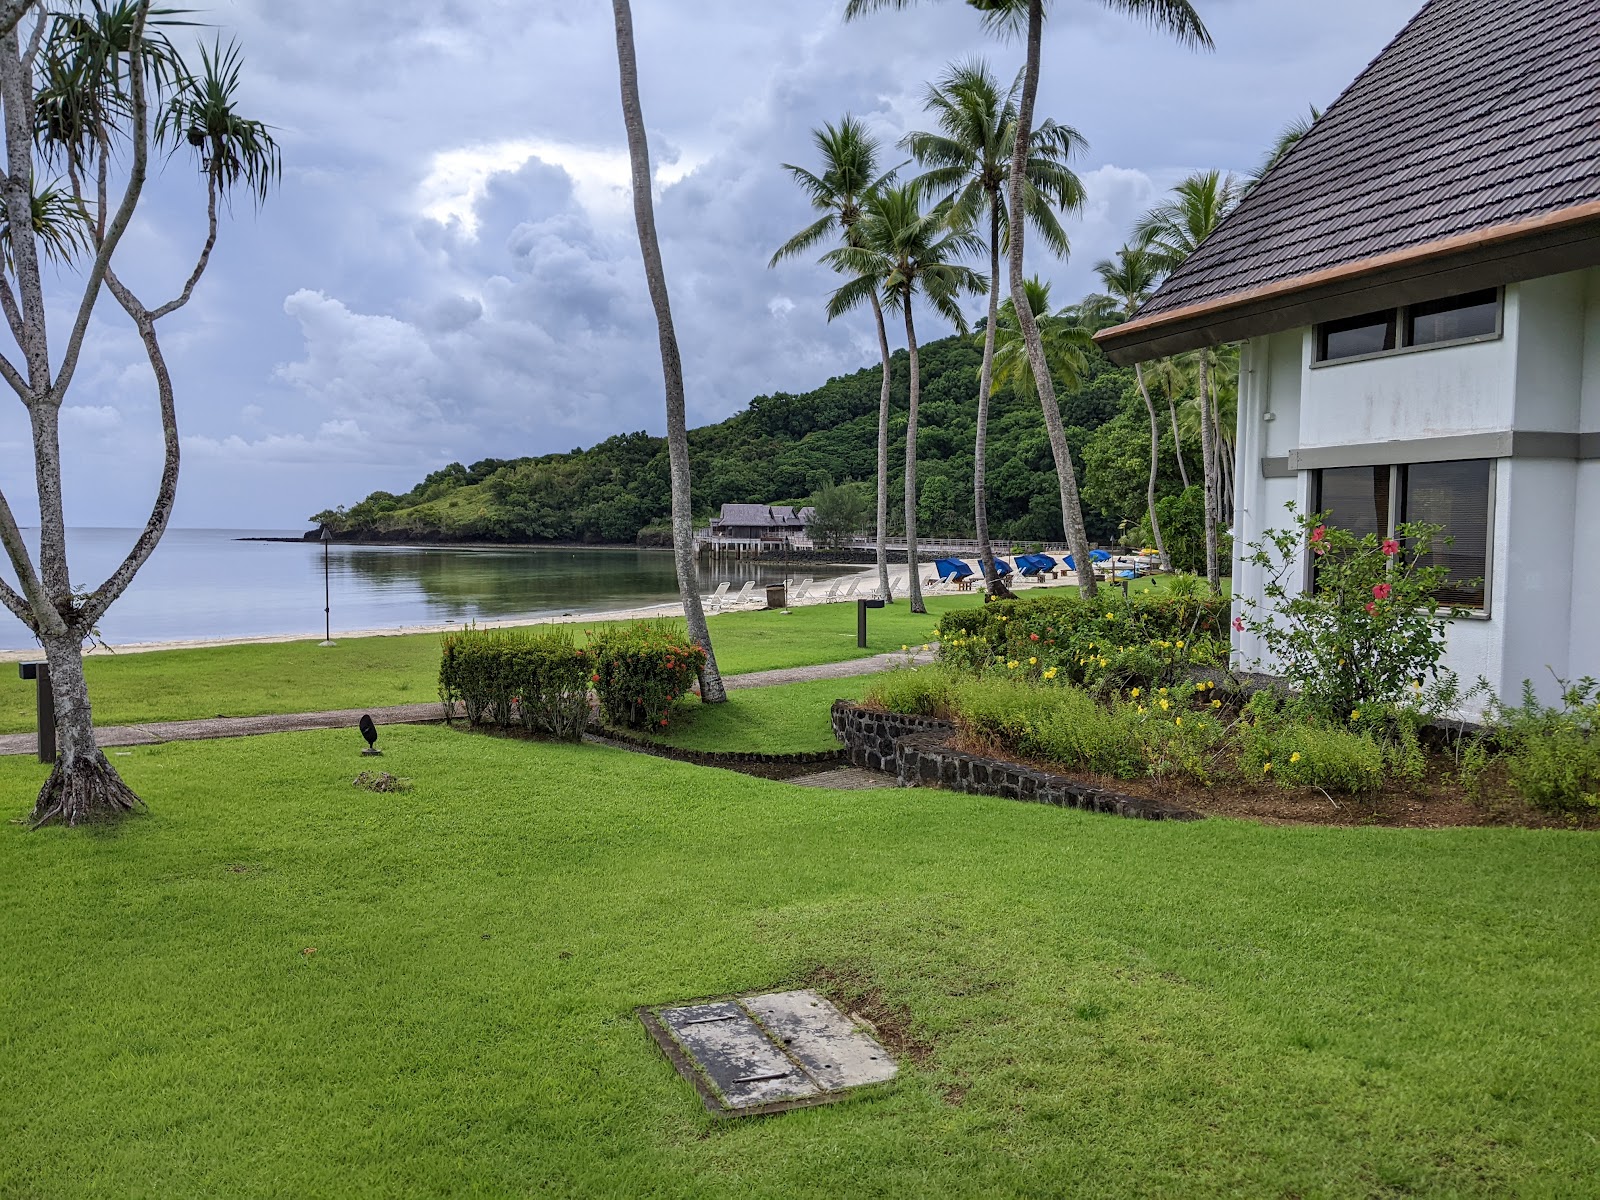 Fotografie cu Palau Pacific Resort sprijinit de stânci